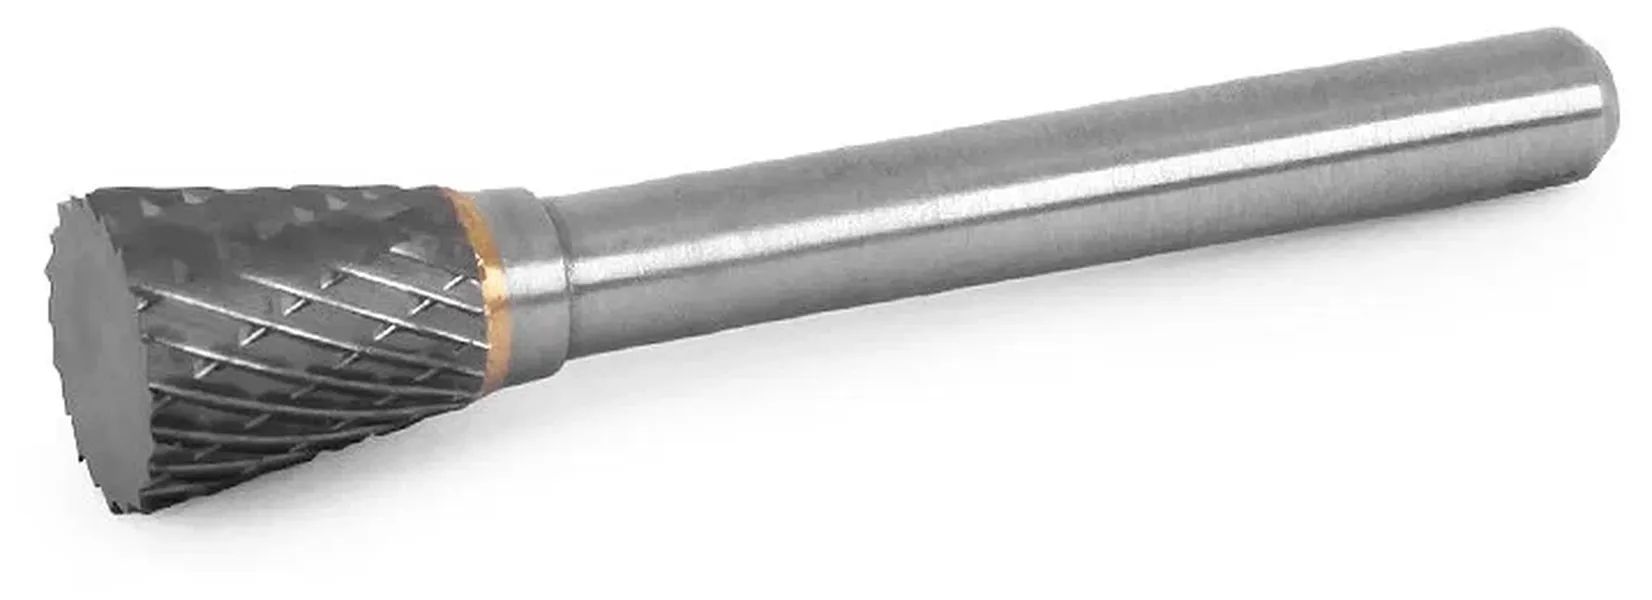 Твердосплавная борфреза MESSER тип N (с обратным конусом) диаметр 10 мм, длина 5 мм, хвост